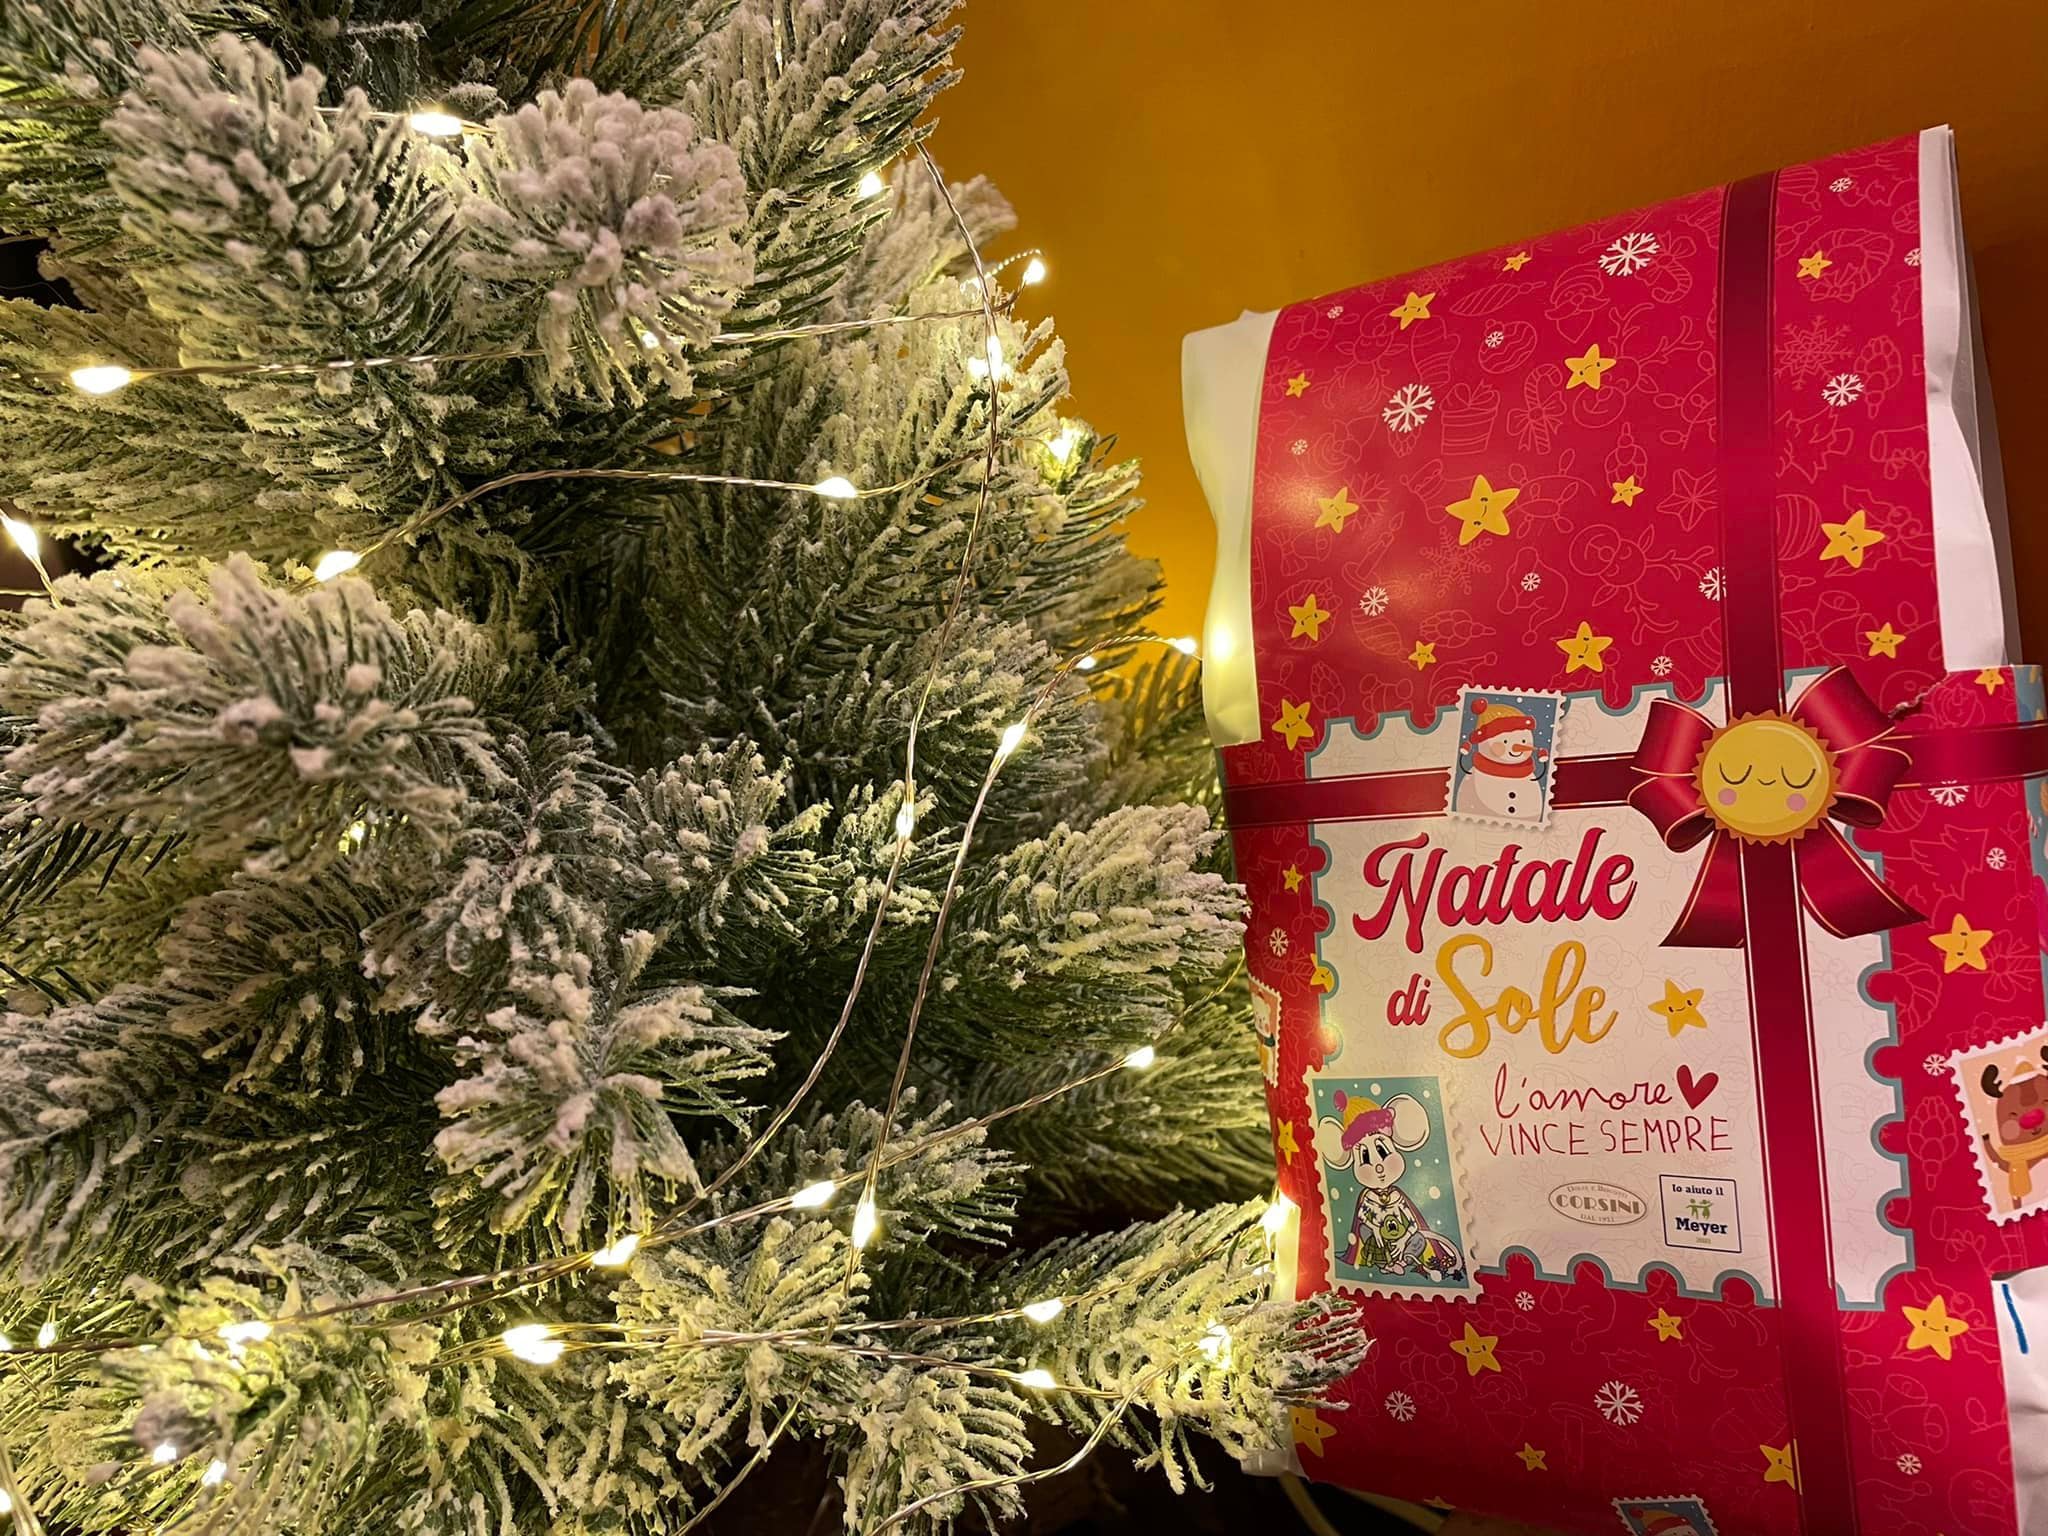 Il Natale di Sole: sotto l'albero una sorpresa di bontà e solidarietà